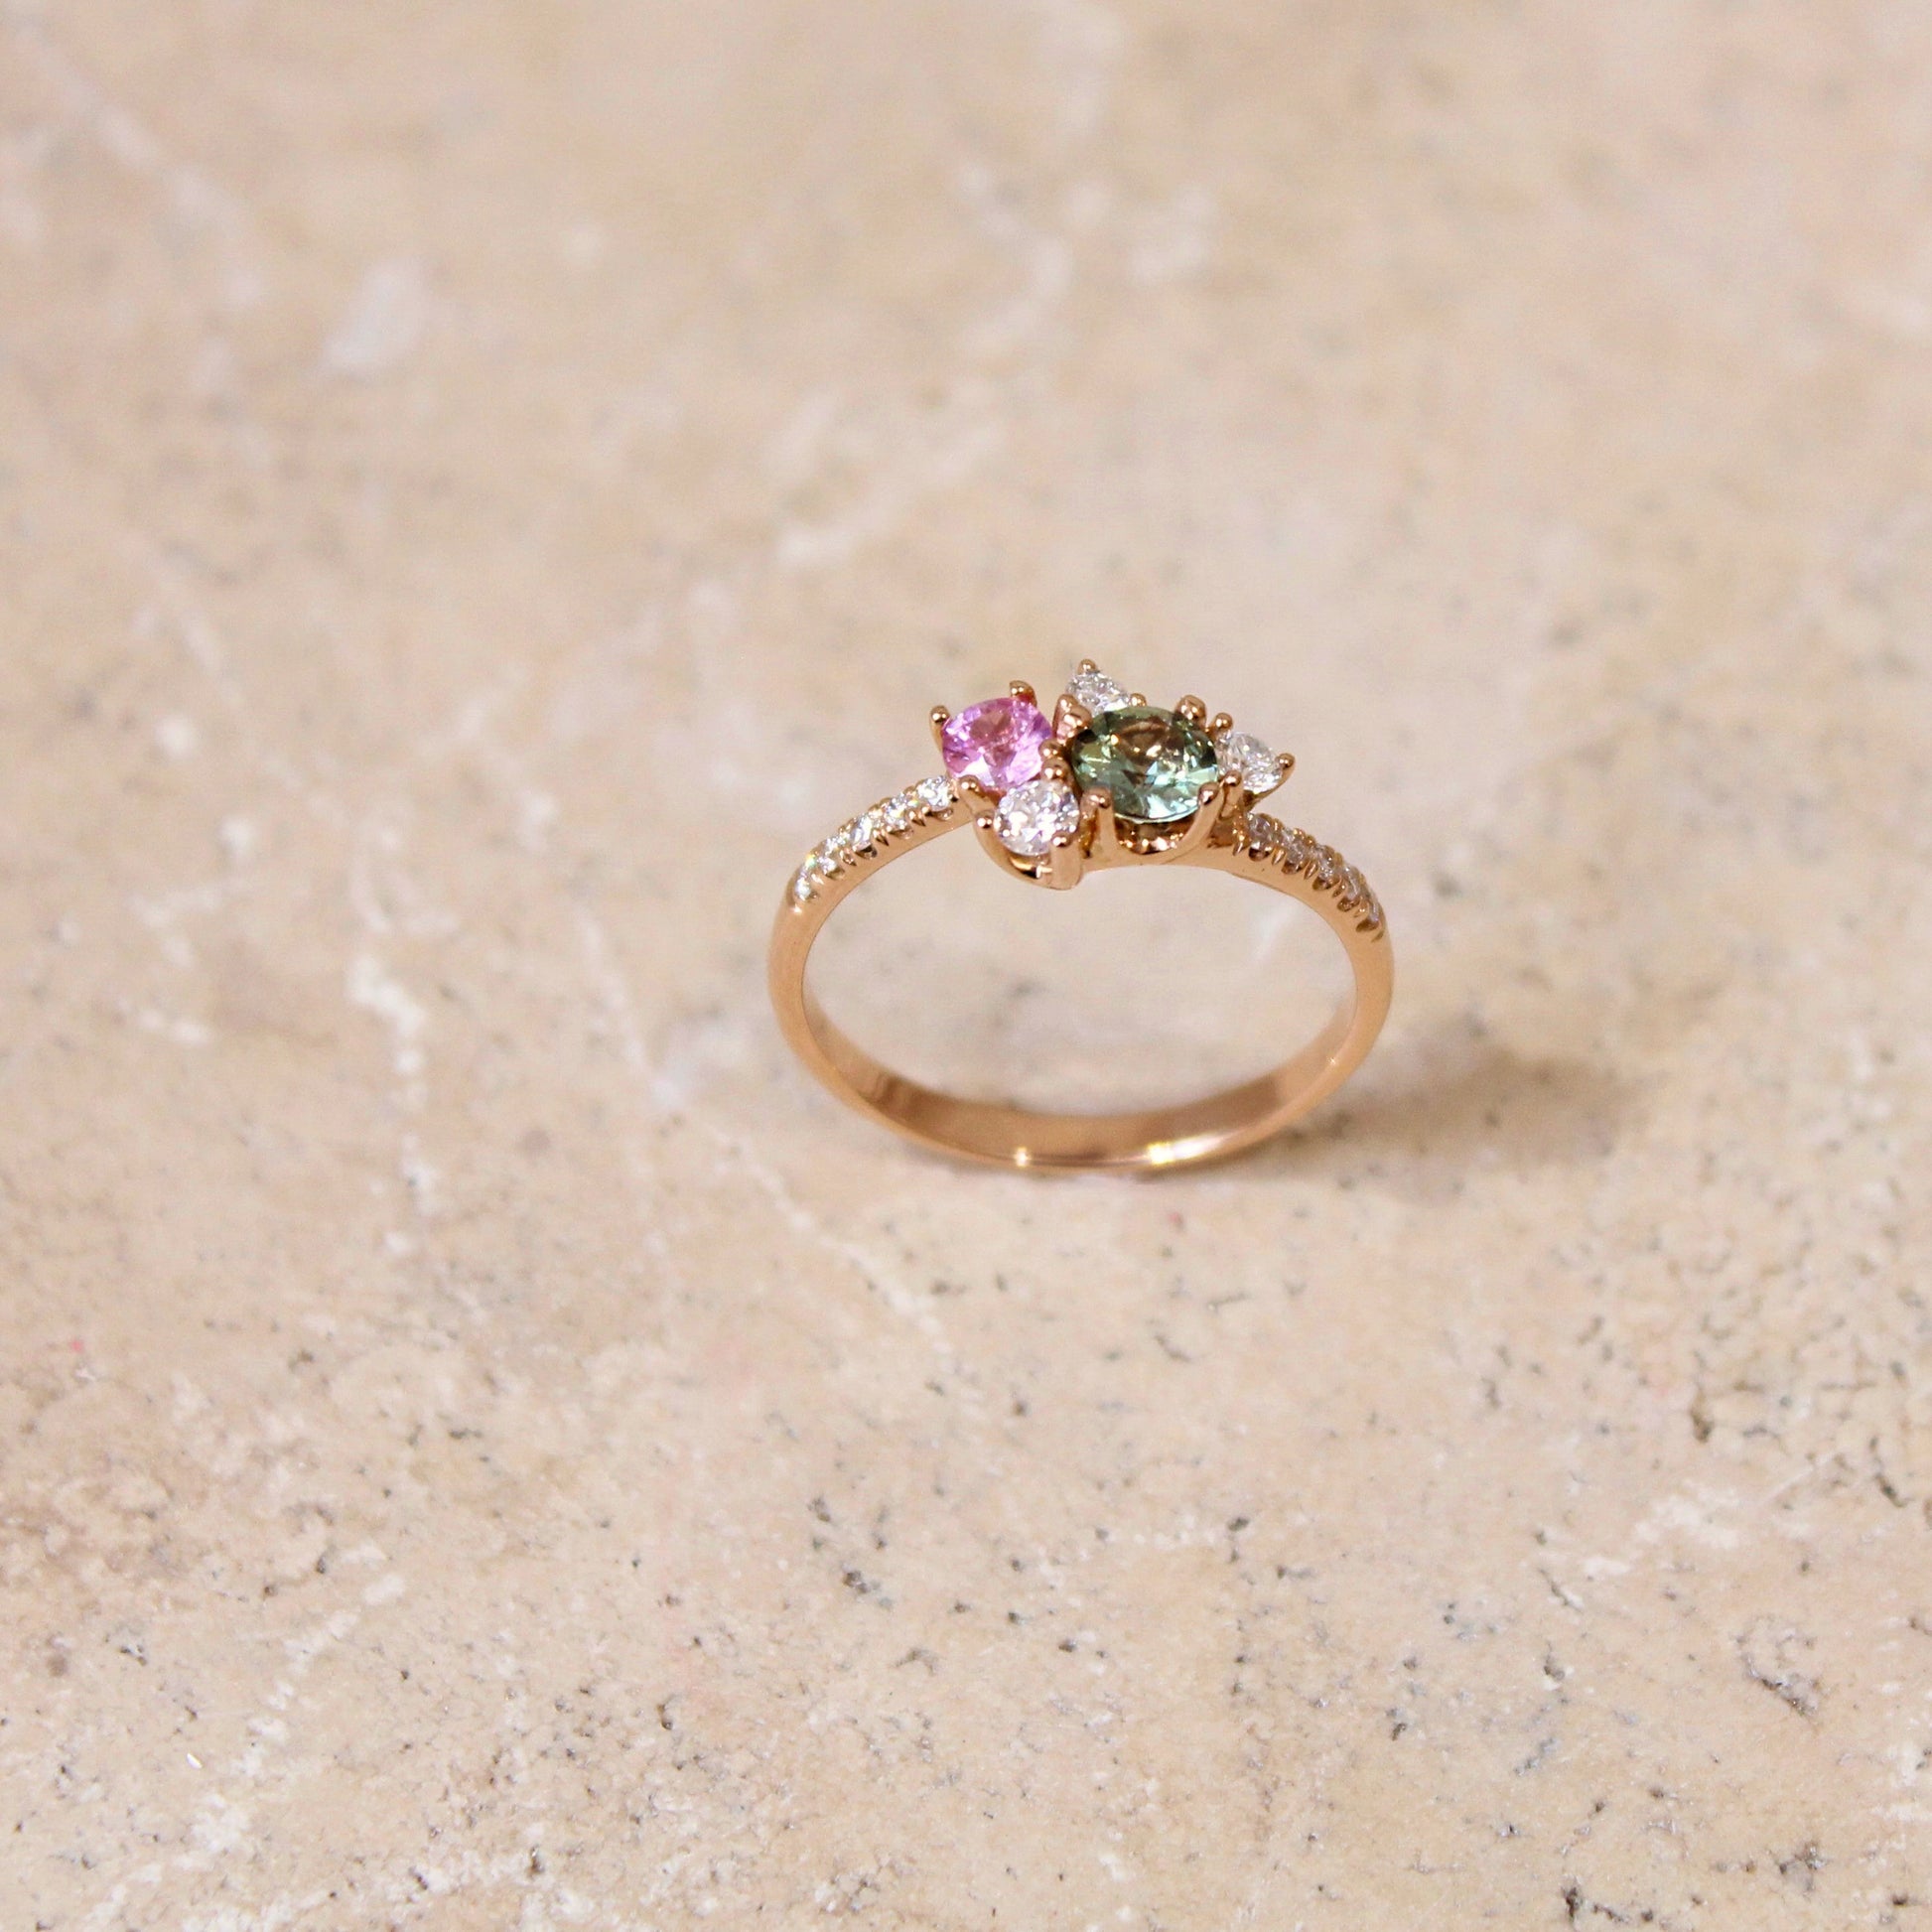 bague romantique avec un saphir vert et un saphir rose réhaussé par des diamants- bijou parfait pour demande en mariage